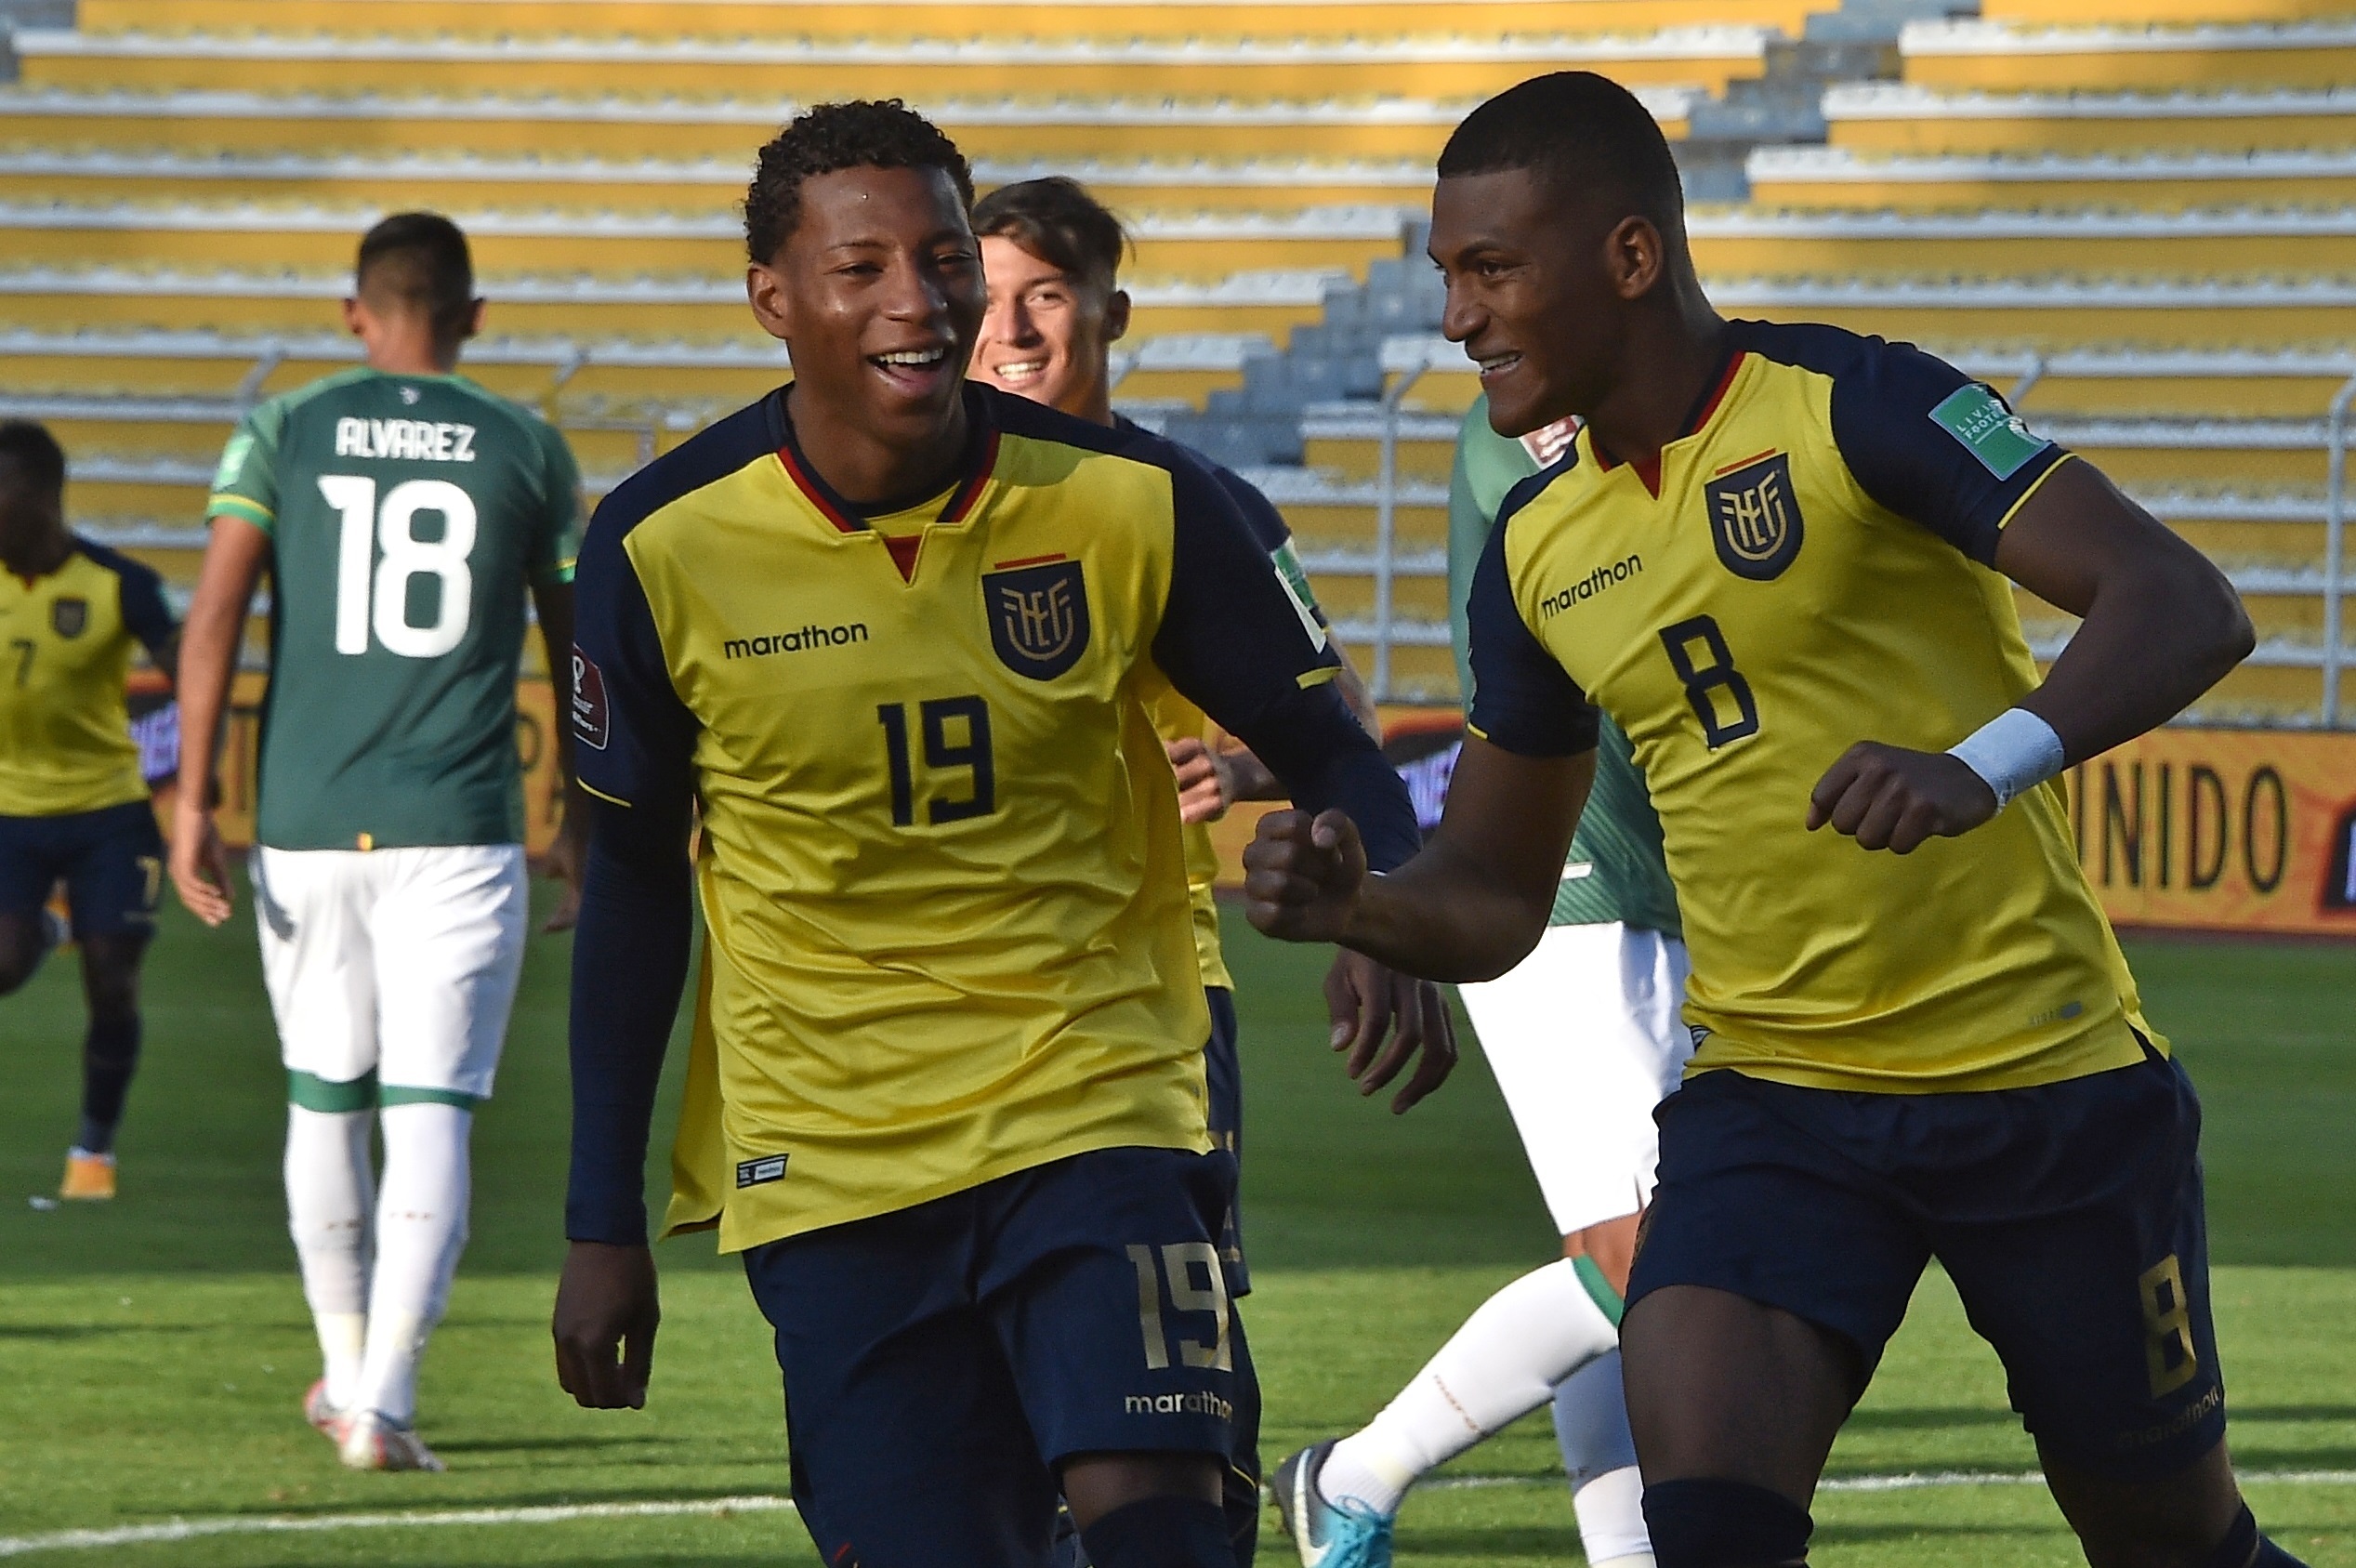 Alerta en la Selección de Ecuador por un brote de coronavirus: seis jugadores dieron positivo antes del duelo ante Colombia
Foto: EFE/Aizar Raldes
